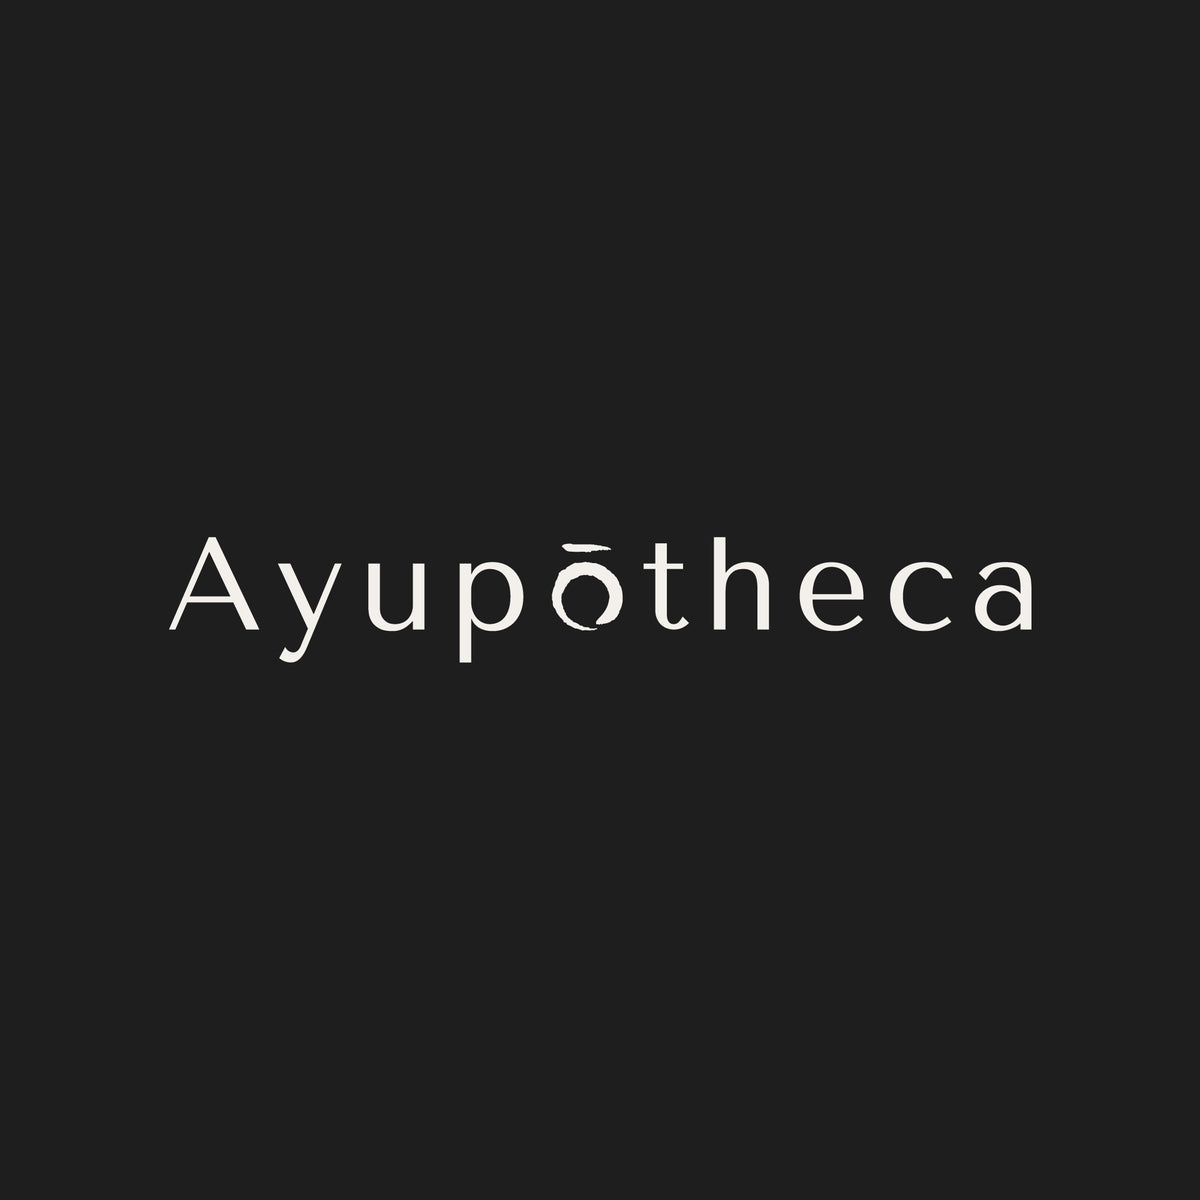 Ayupotheca